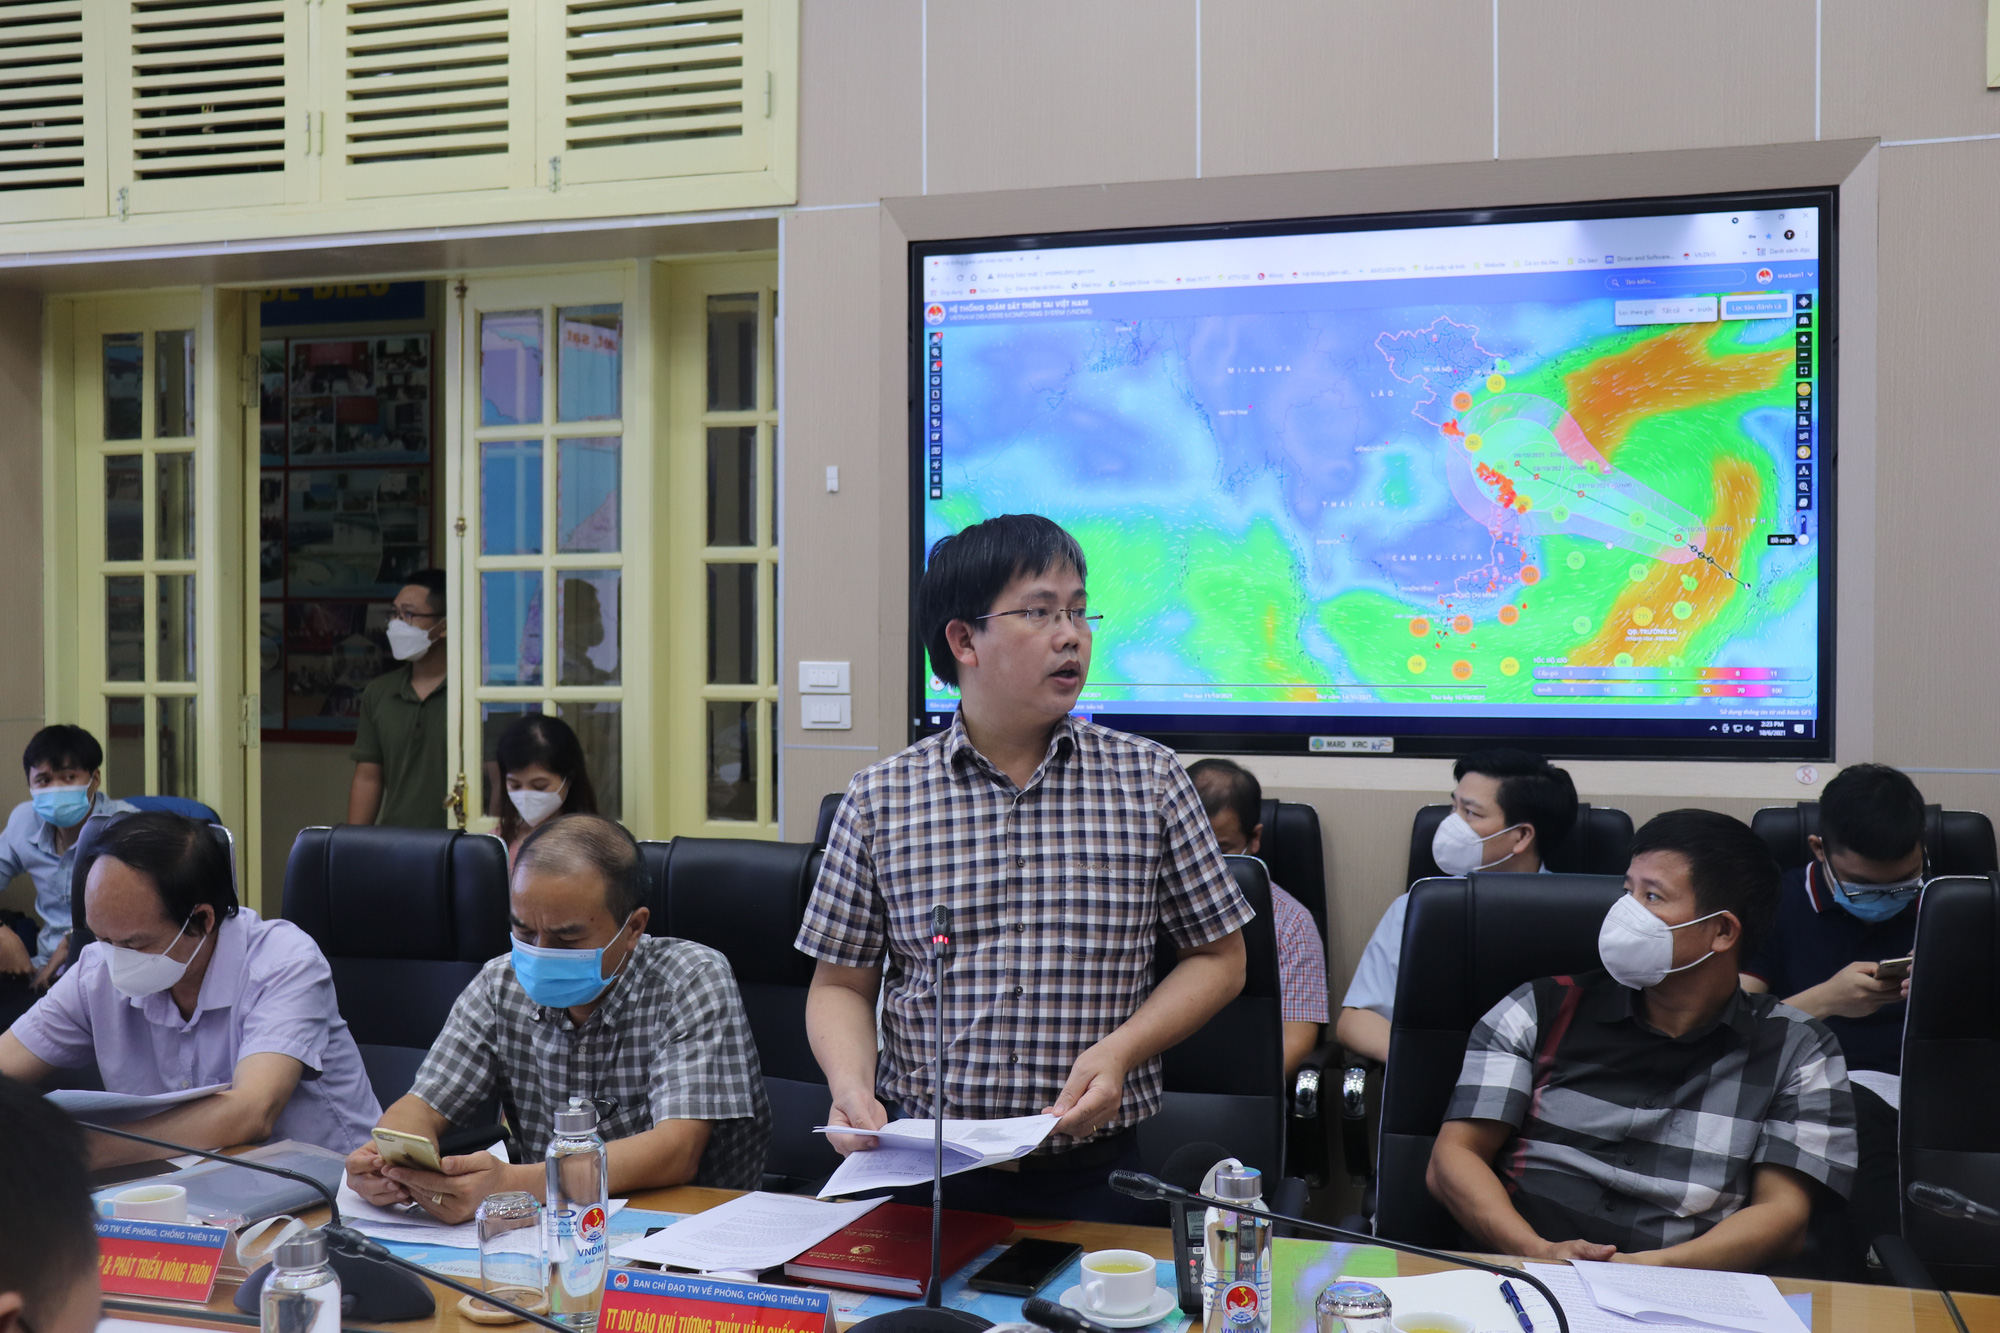 Bão số 8 nối tiếp bão số 7 trên biển Đông, chuyên gia nhận định miền Trung sẽ có mưa cực kỳ lớn - Ảnh 3.